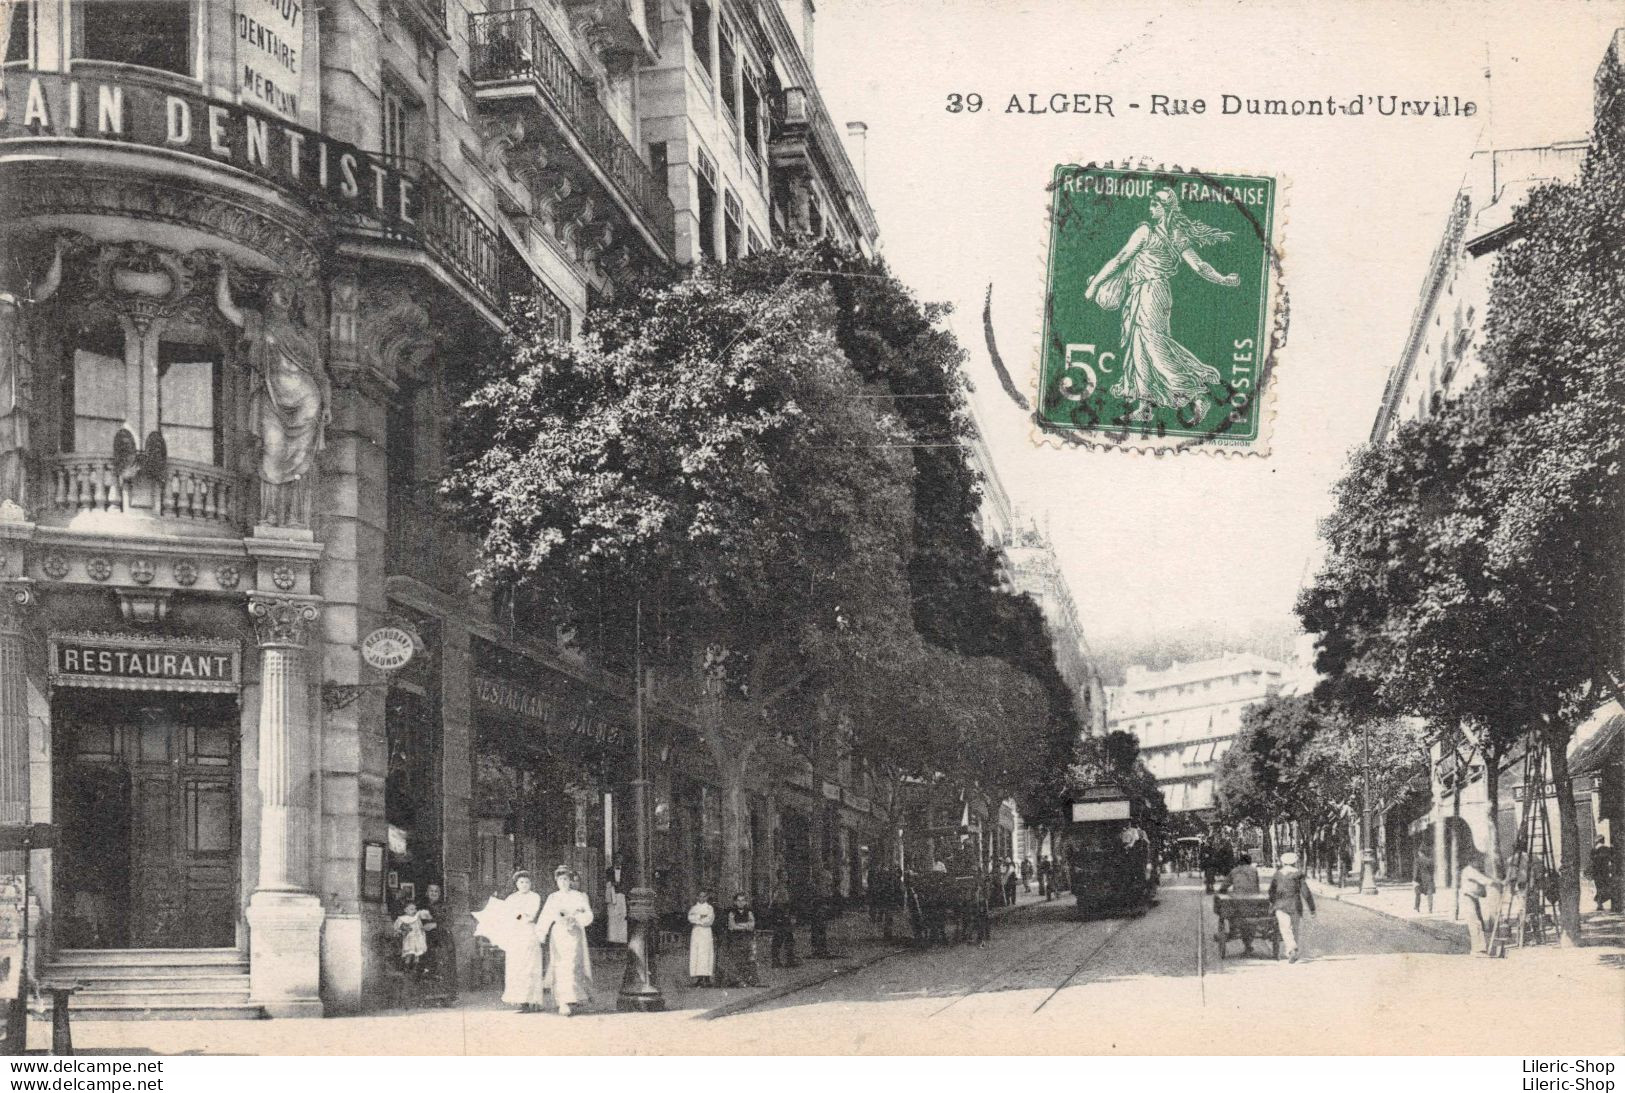 ALGER - Rue Durmont-d-'Urville - Restaurant Jaunon - Tramway Cpa  14 05 1914   ♥♥♥ - Alger